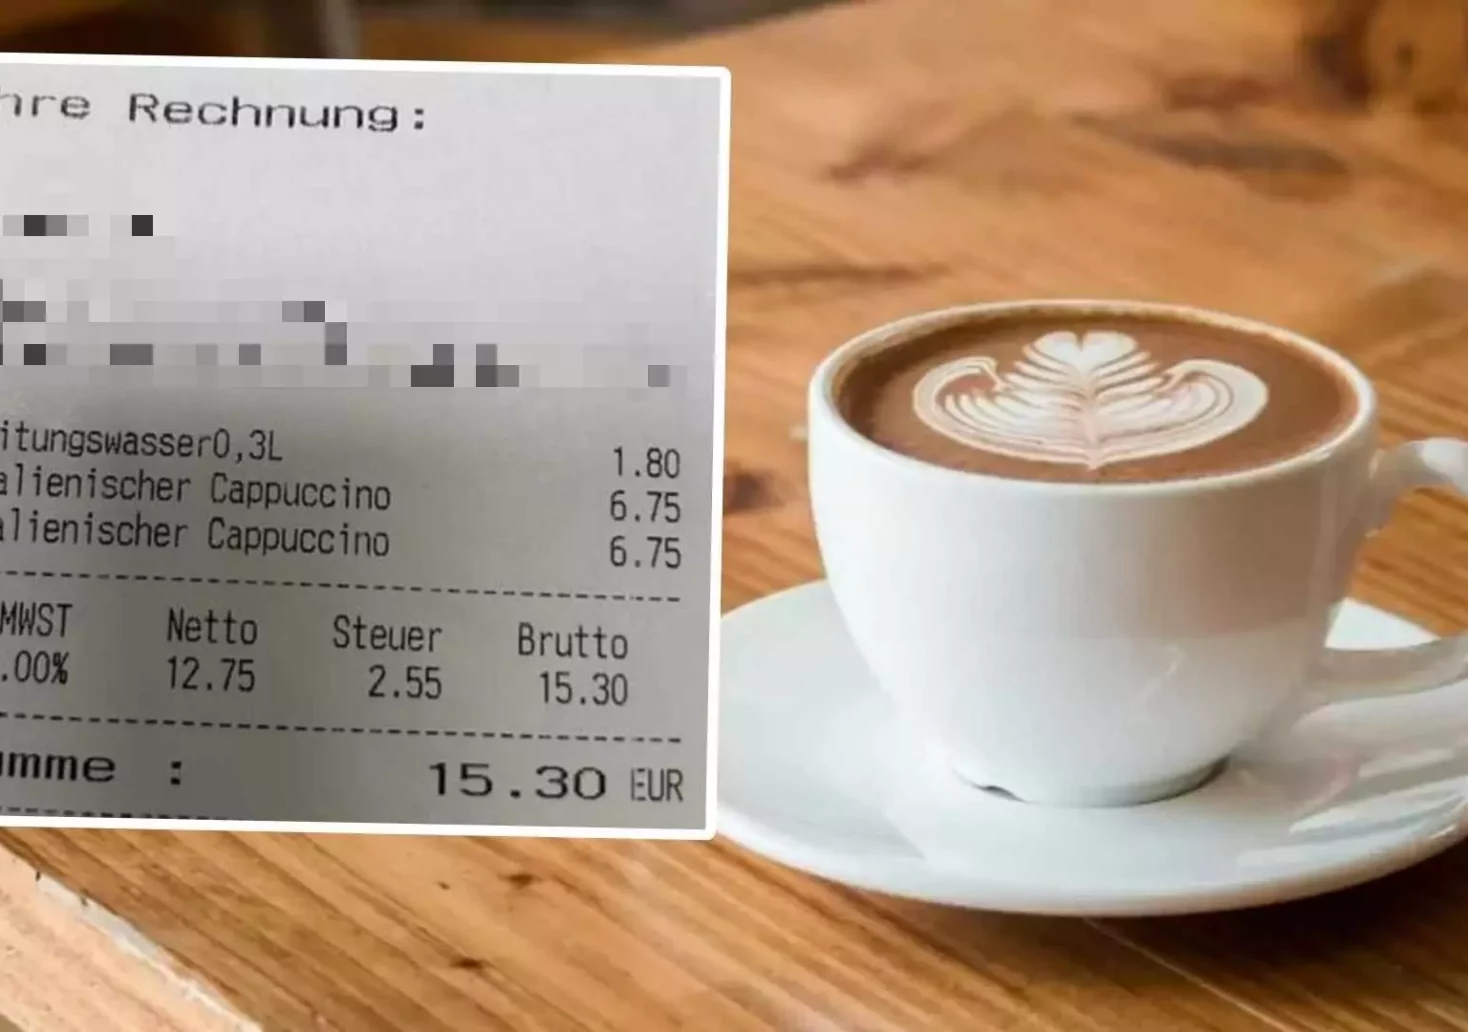 Foto in Beitrag von 5min.at: Zu sehen ist ein Kaffee im Hintergrund und die horrende Rechnung im Vordegrund.